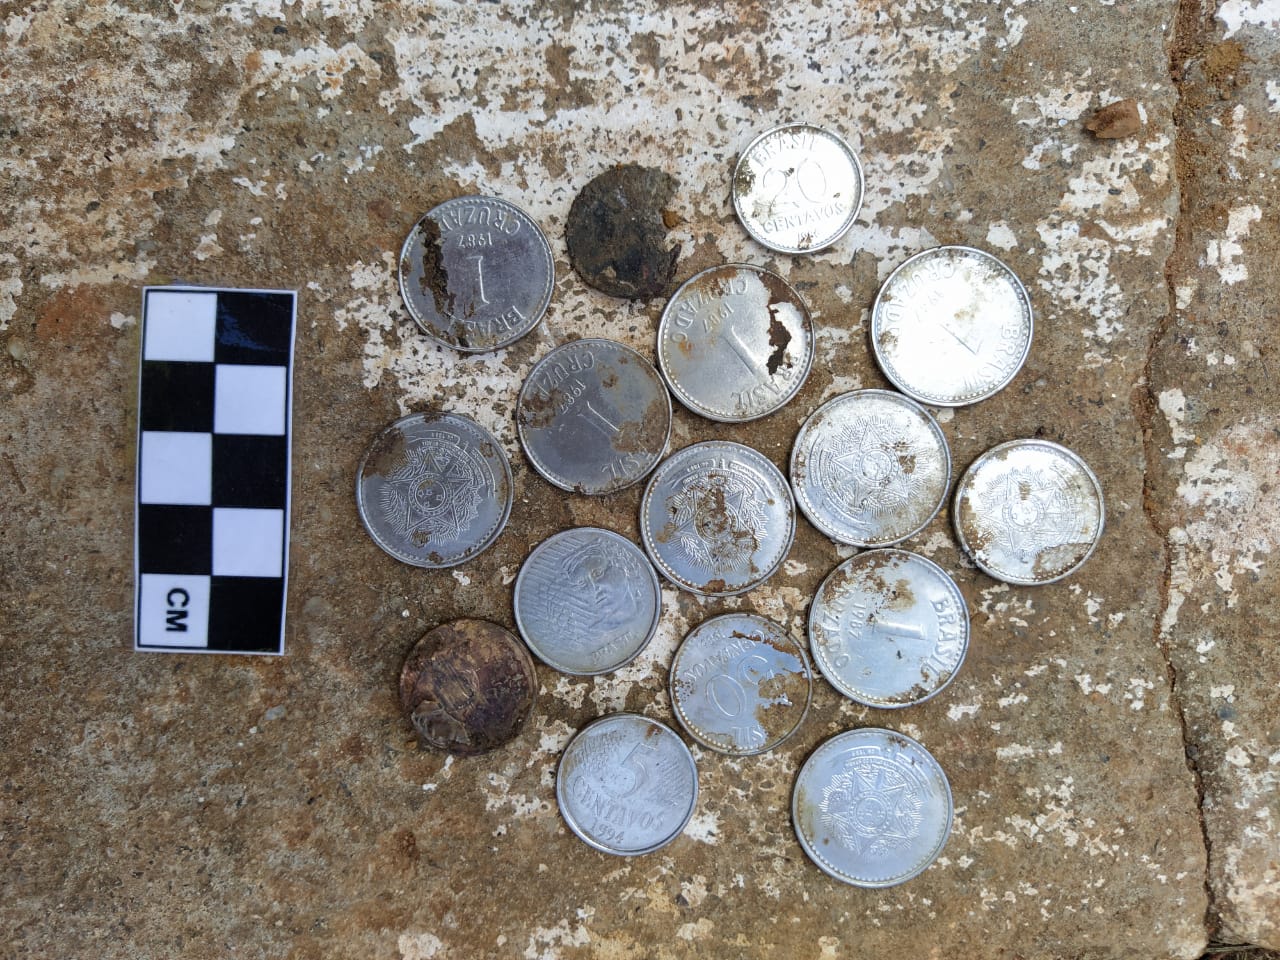 Arqueólogos encontram objetos do século 18 em praça de Mariana